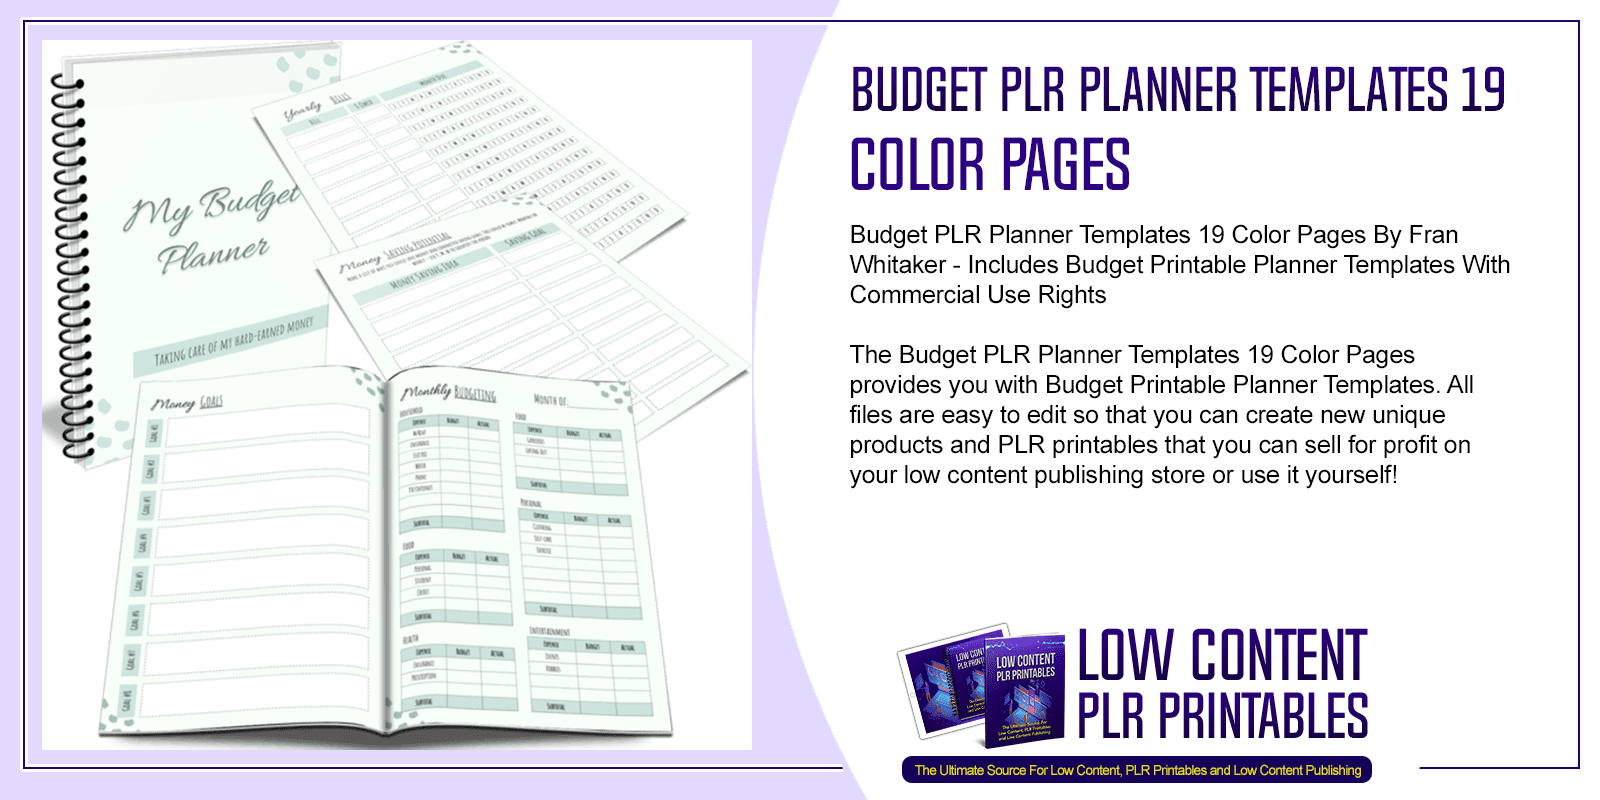 Budget PLR Planner Templates 19 Color Pages